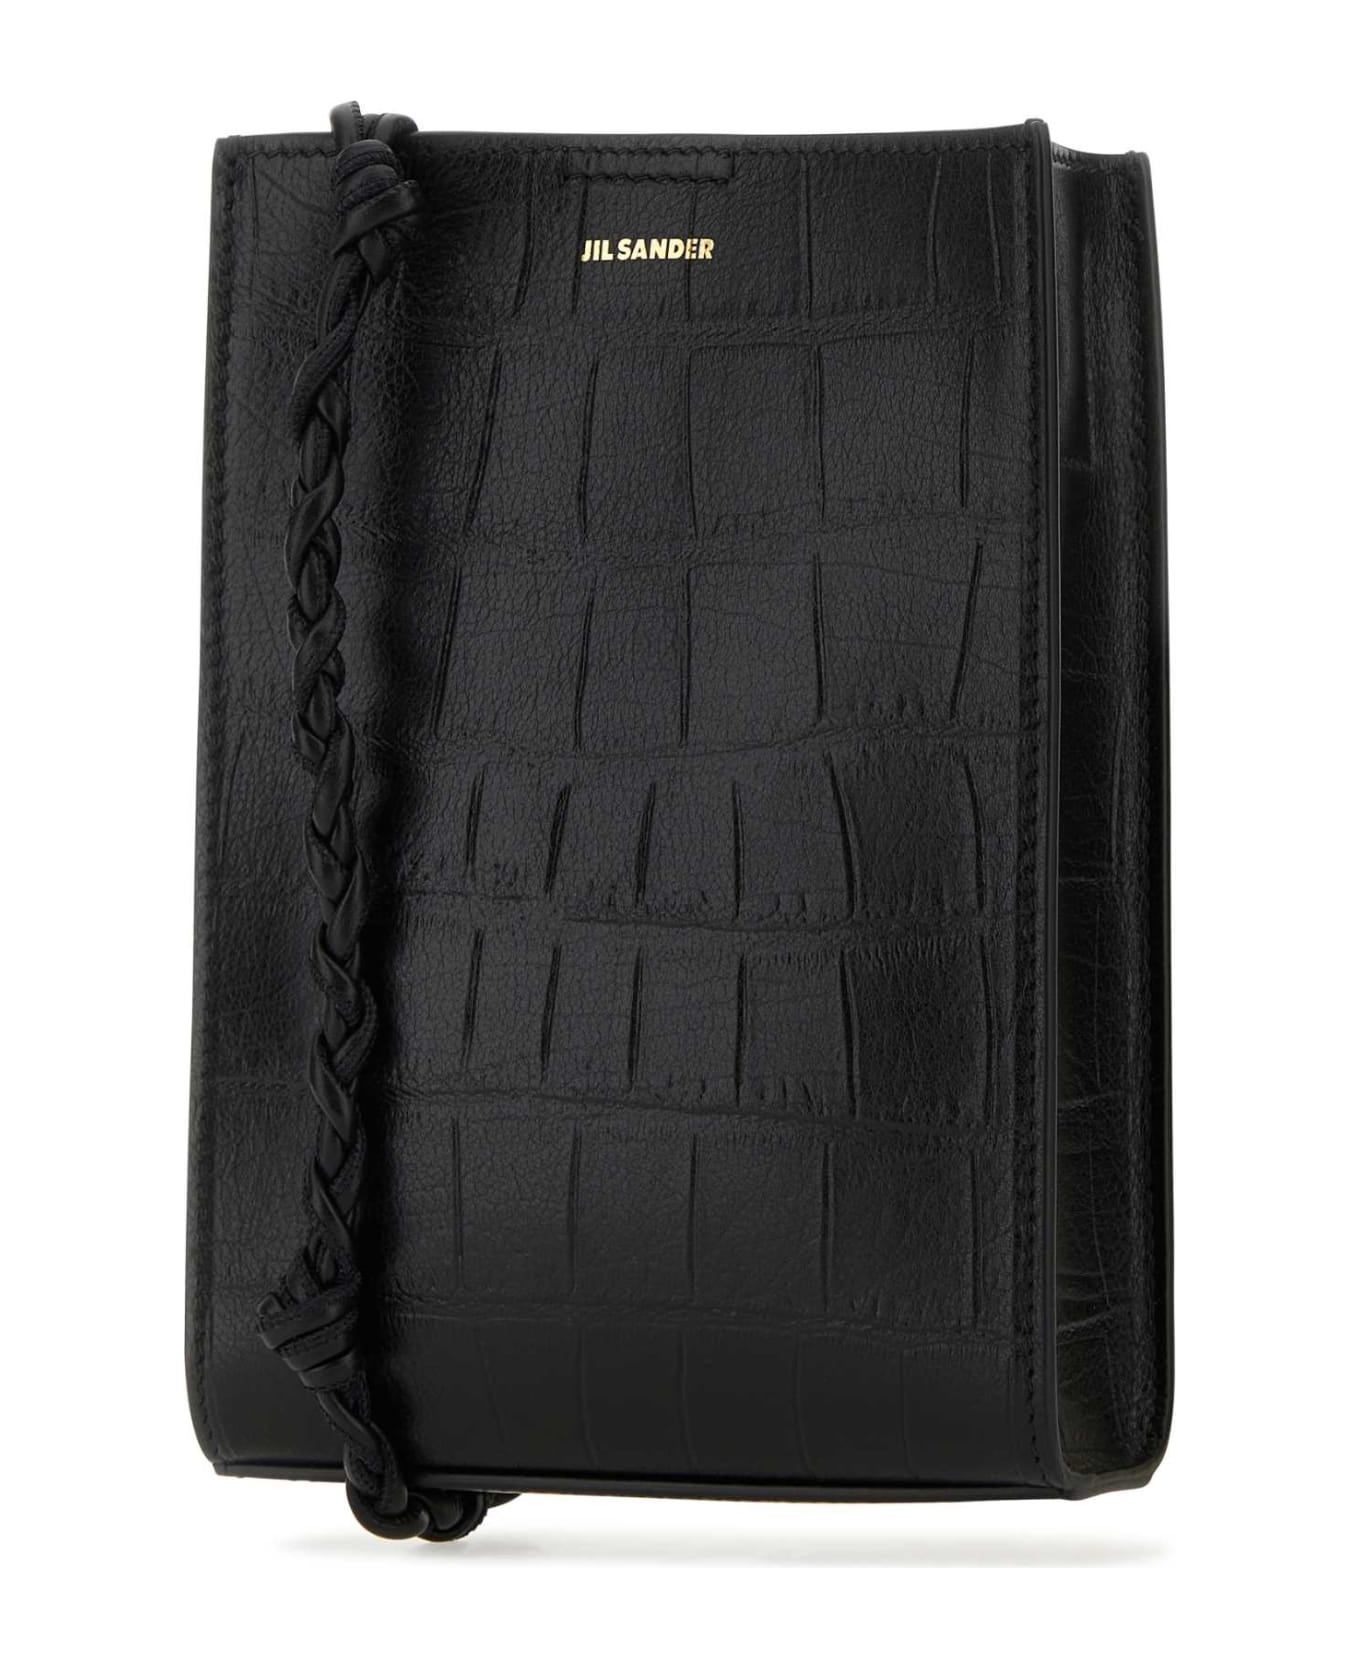 Jil Sander Black Leather Small Tangle Shoulder Bag - 001